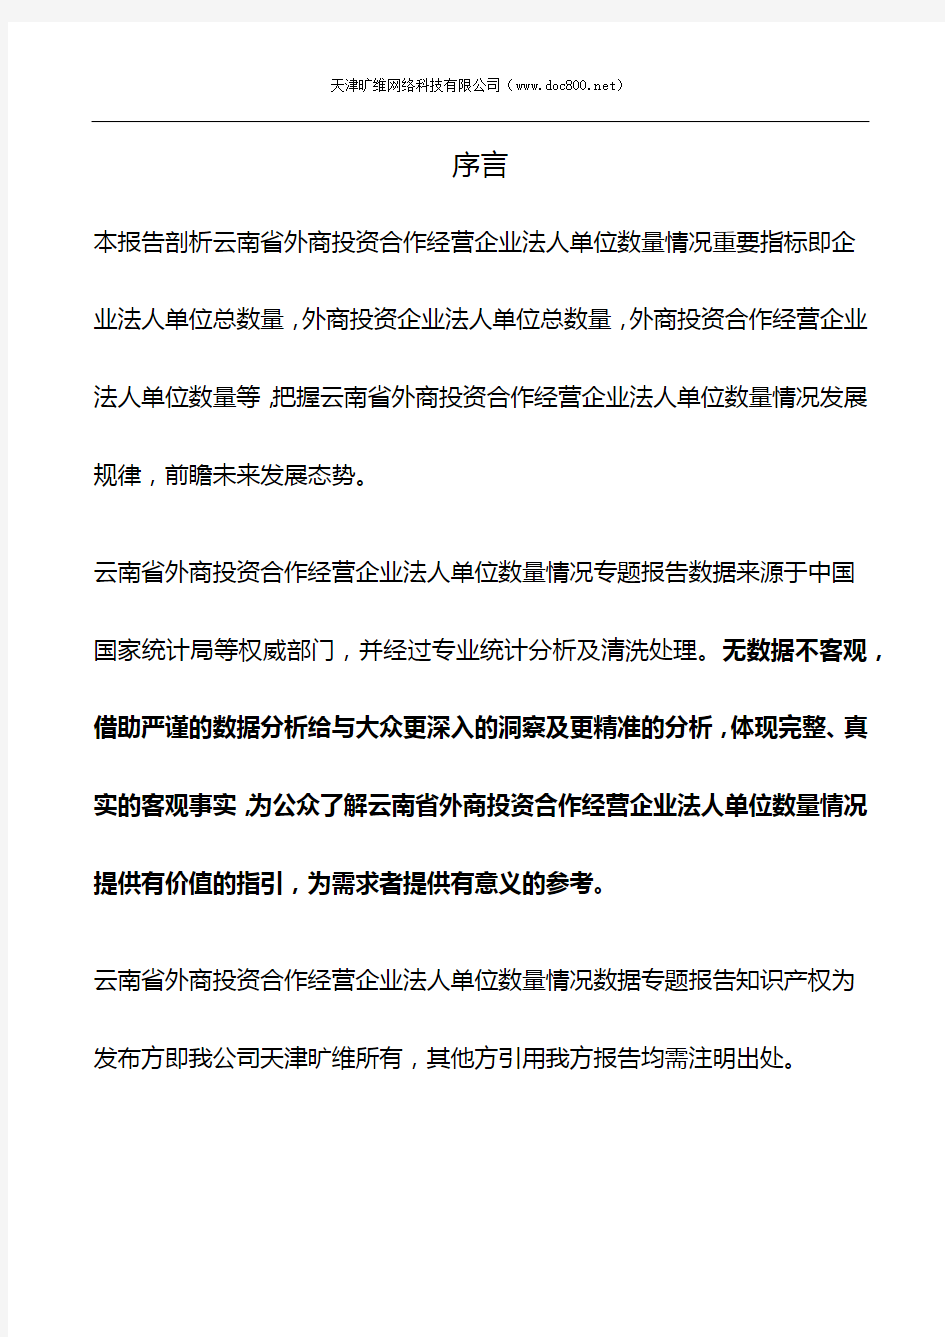 云南省外商投资合作经营企业法人单位数量情况3年数据专题报告2019版